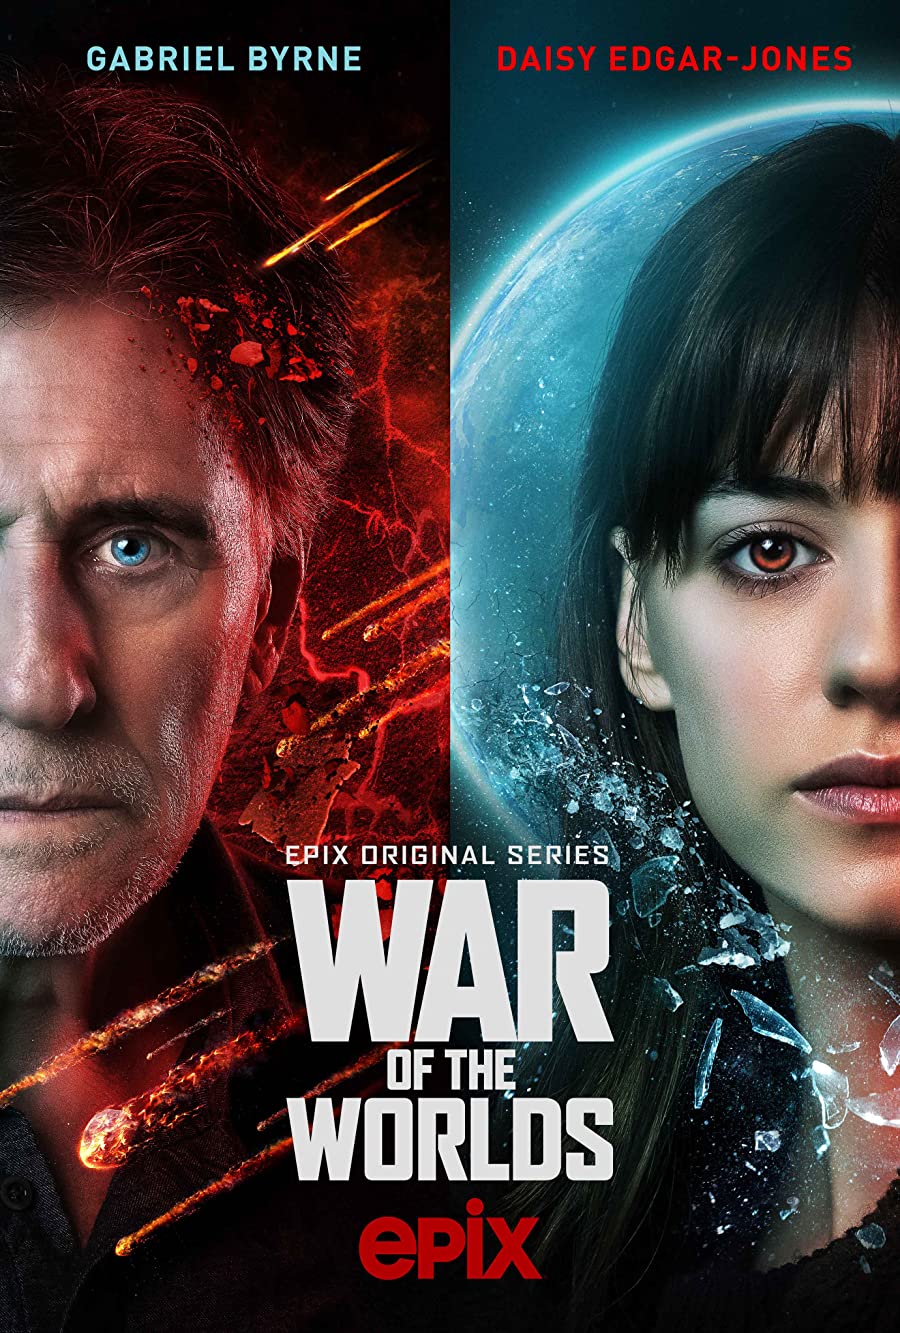 دانلود سریال War of the Worlds 2020 جنگ دنیاها فصل سوم 3 قسمت 1 تا 7 با زیرنویس فارسی چسبیده